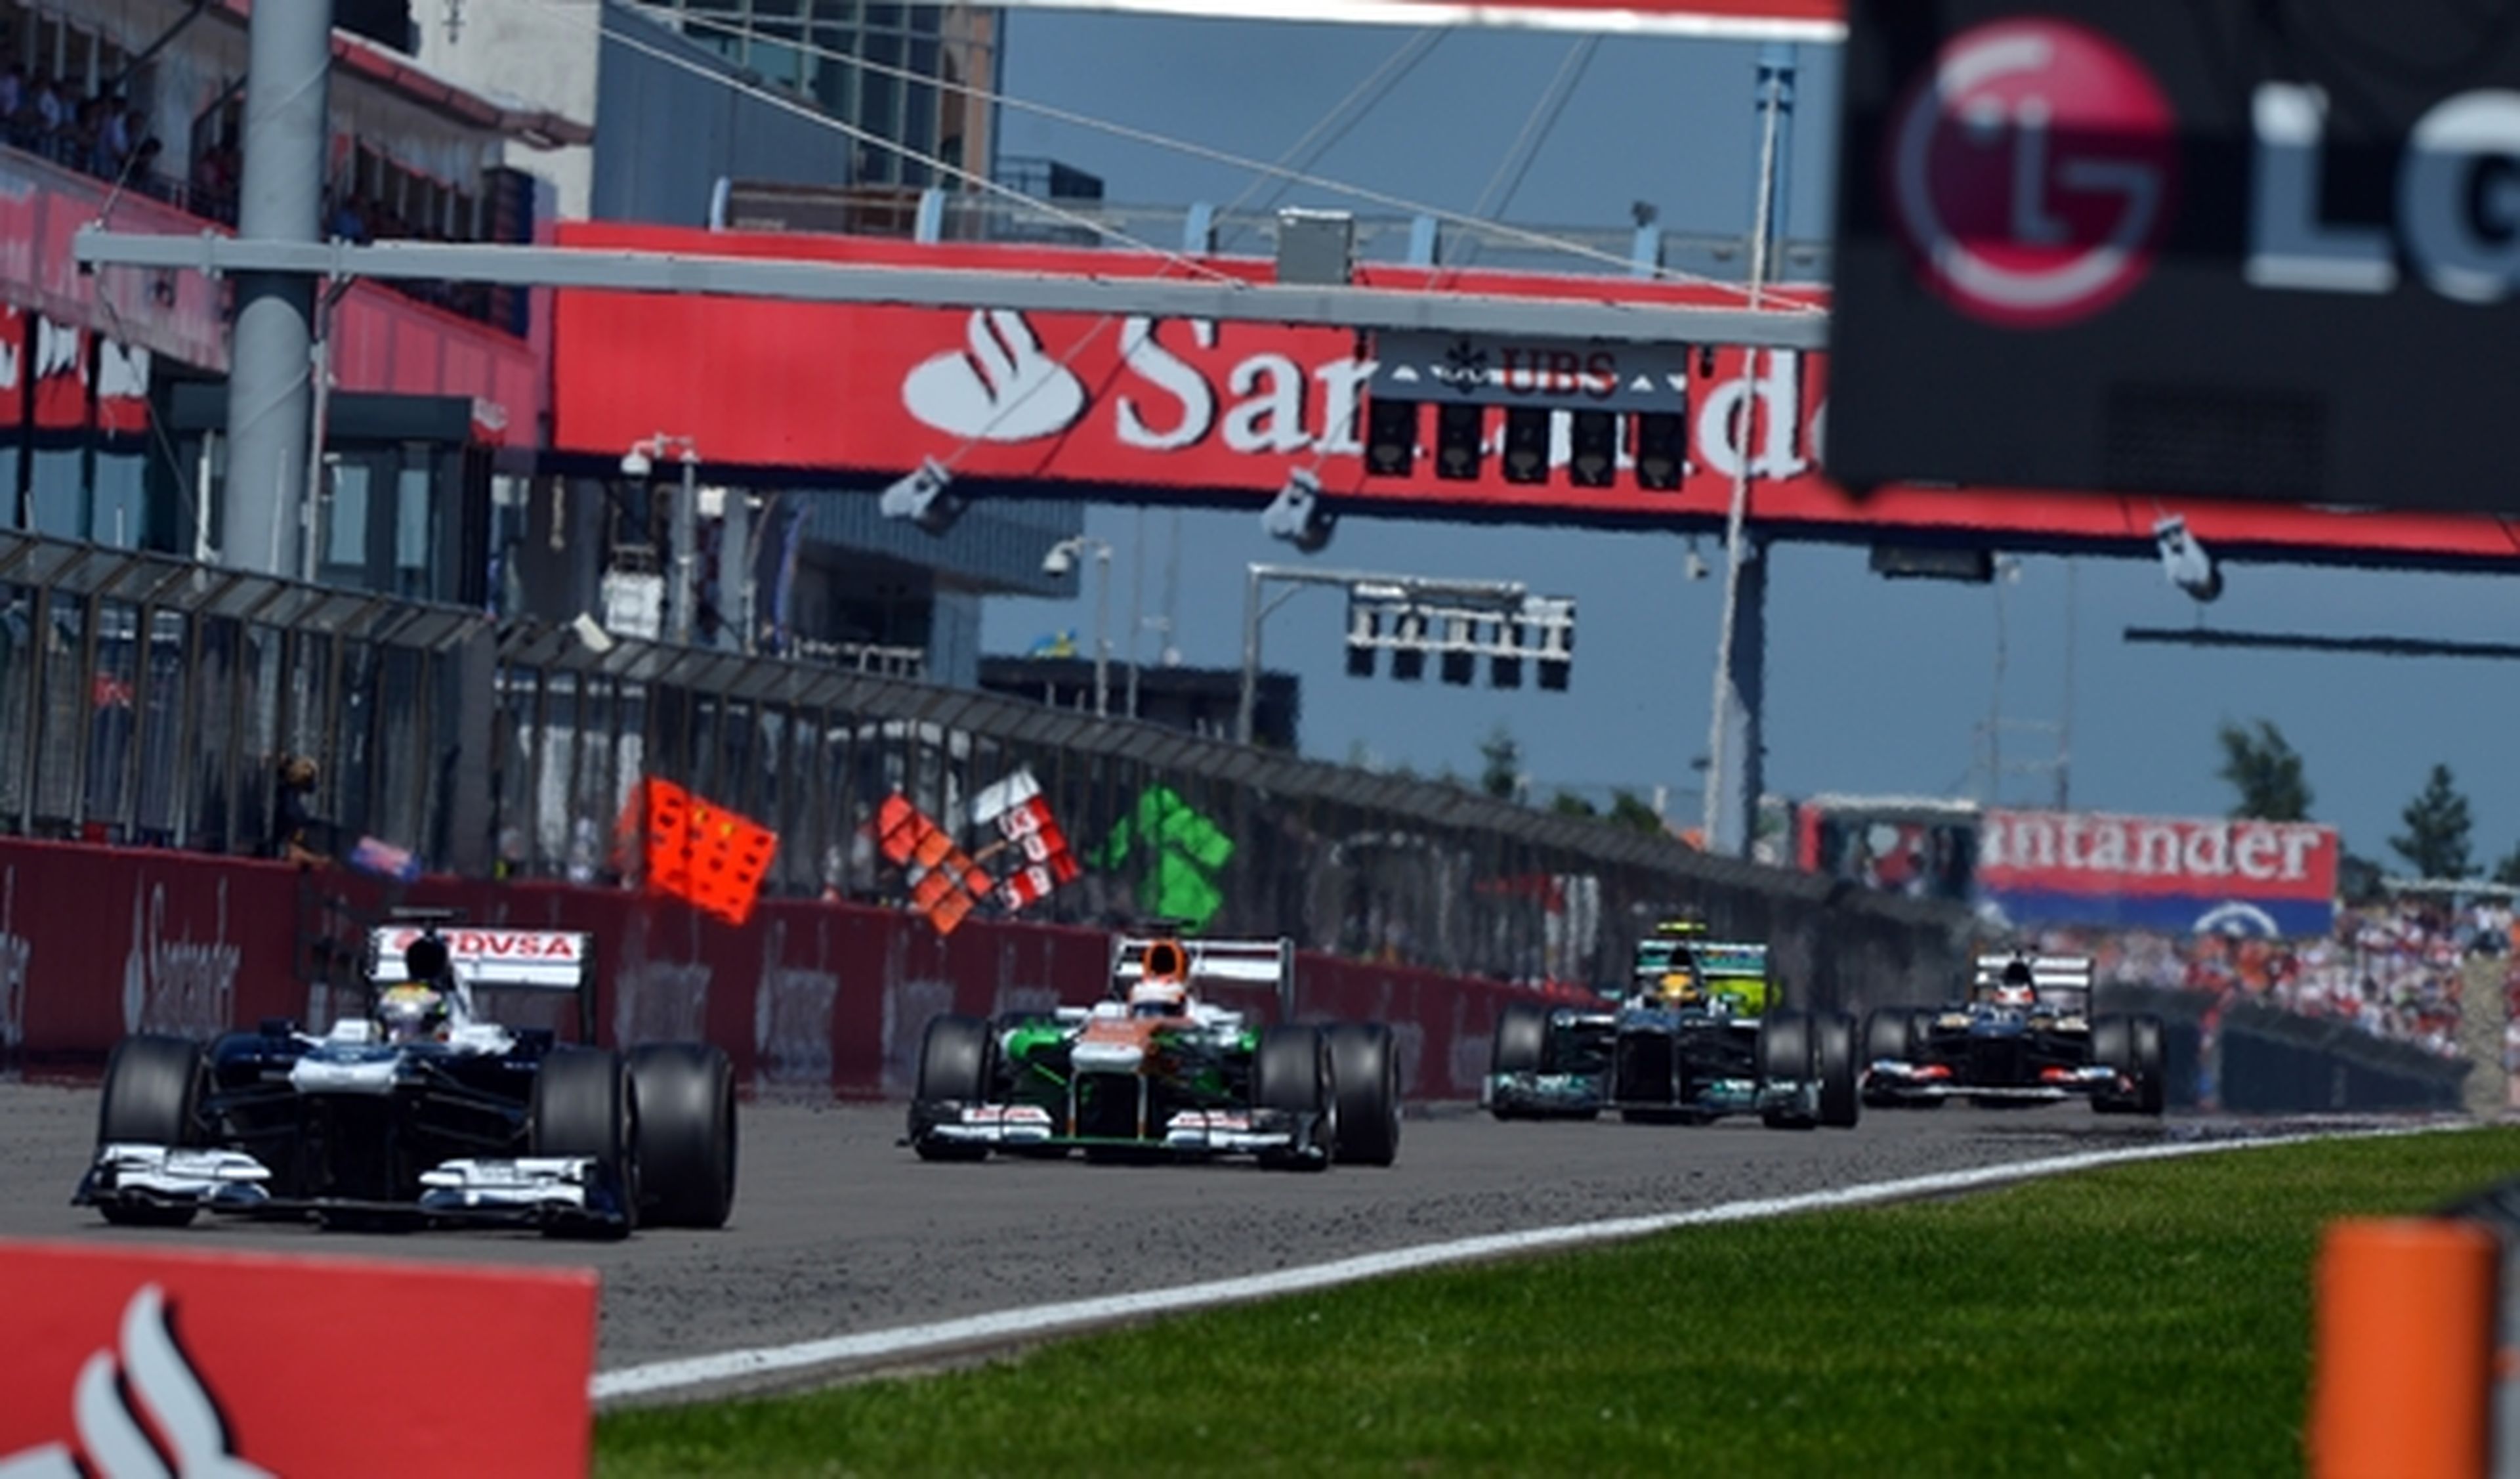 La FIA confirma que no habrá GP de Alemania F1 en 2015